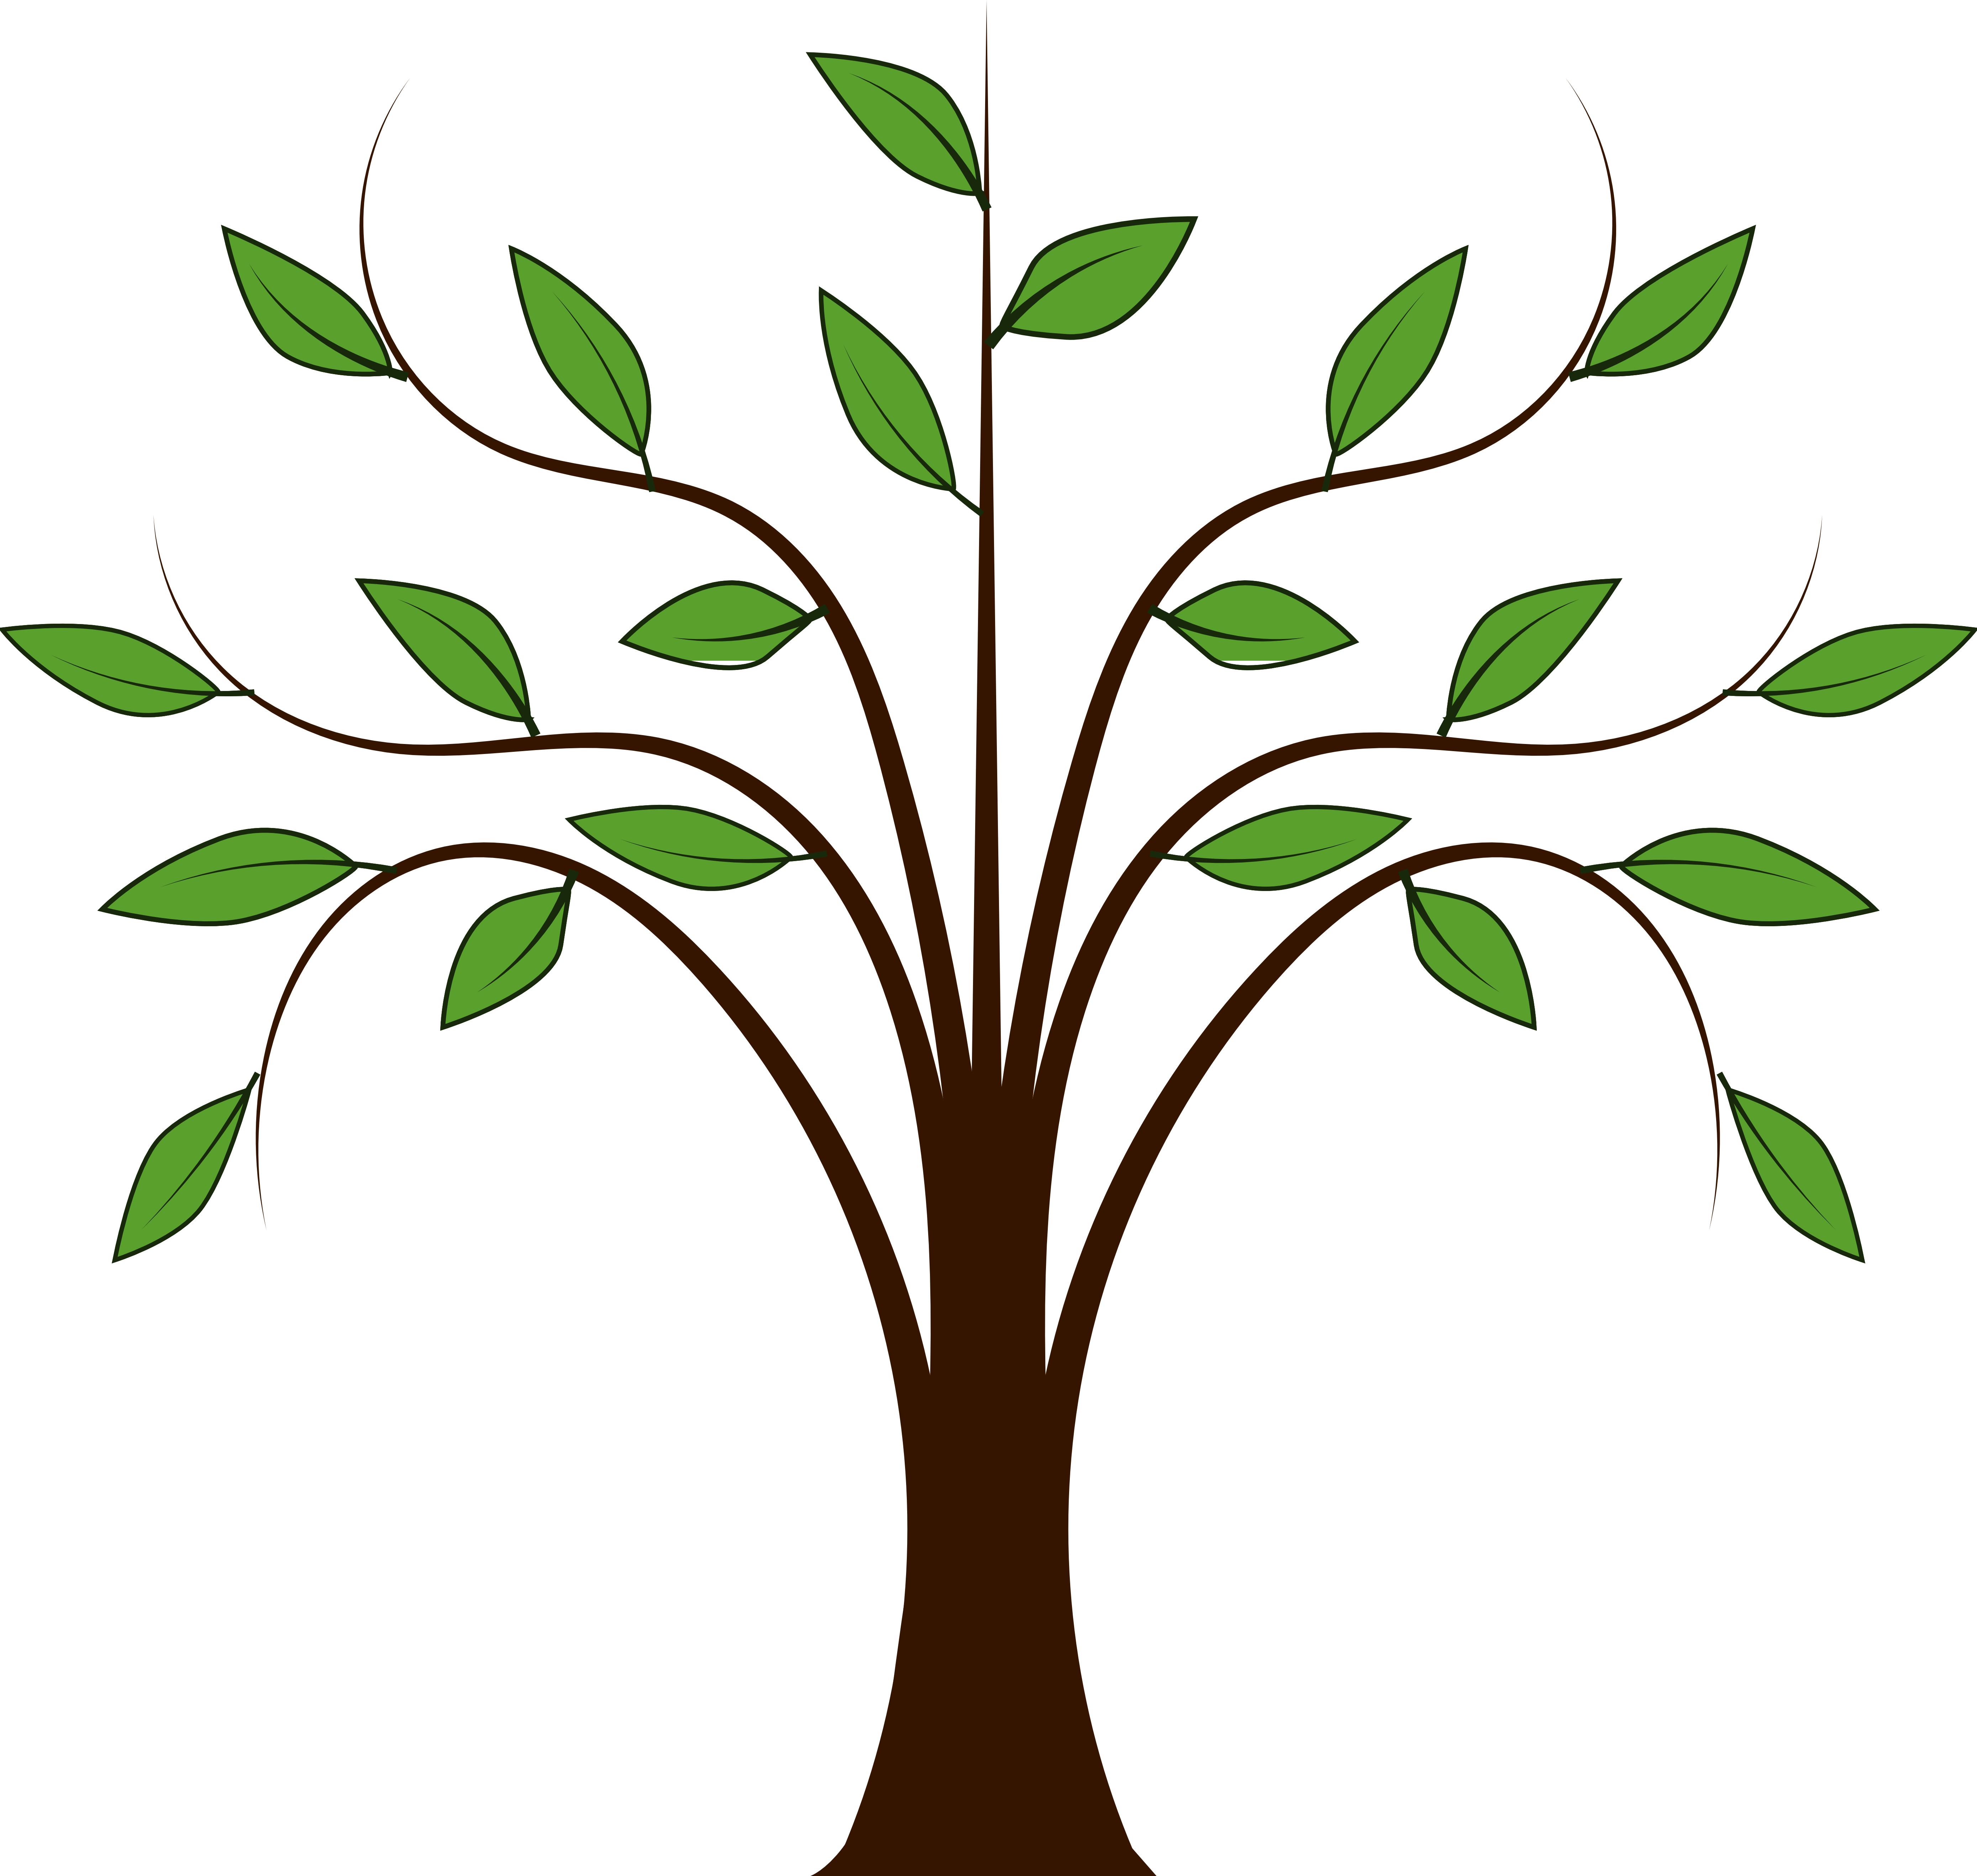 Vines family tree